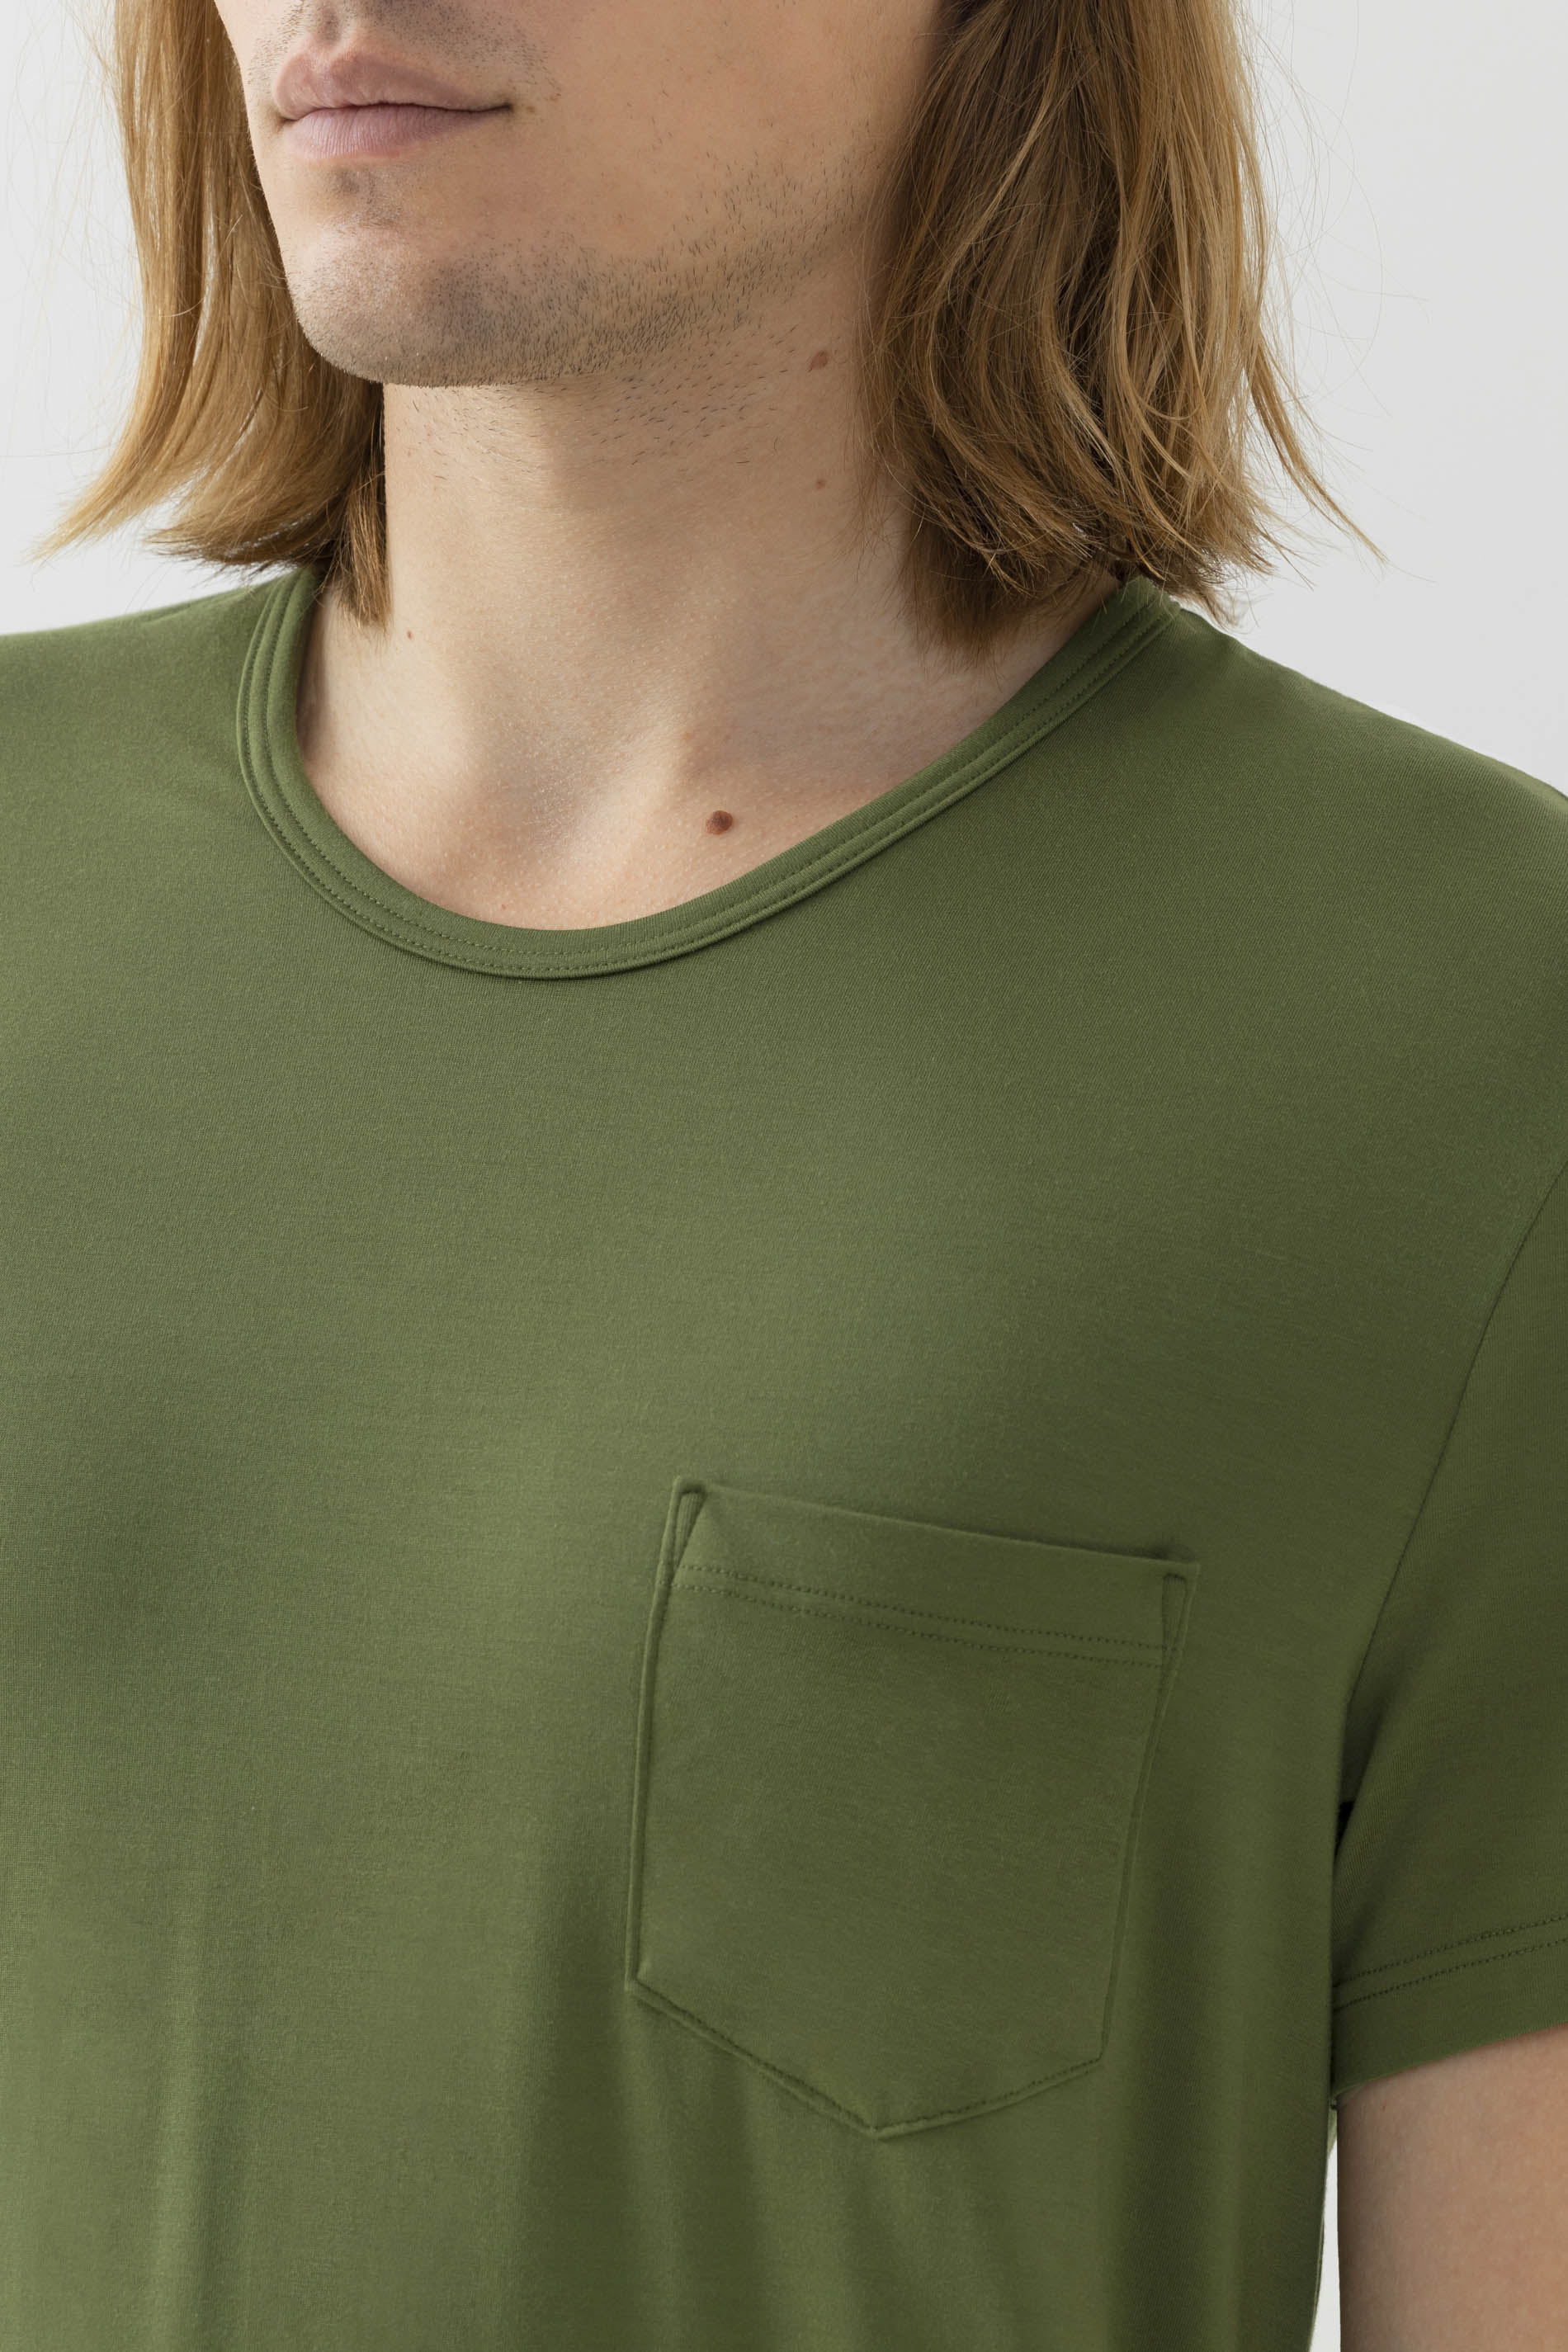 T-Shirt Serie Jefferson Modal Detailansicht 01 | mey®